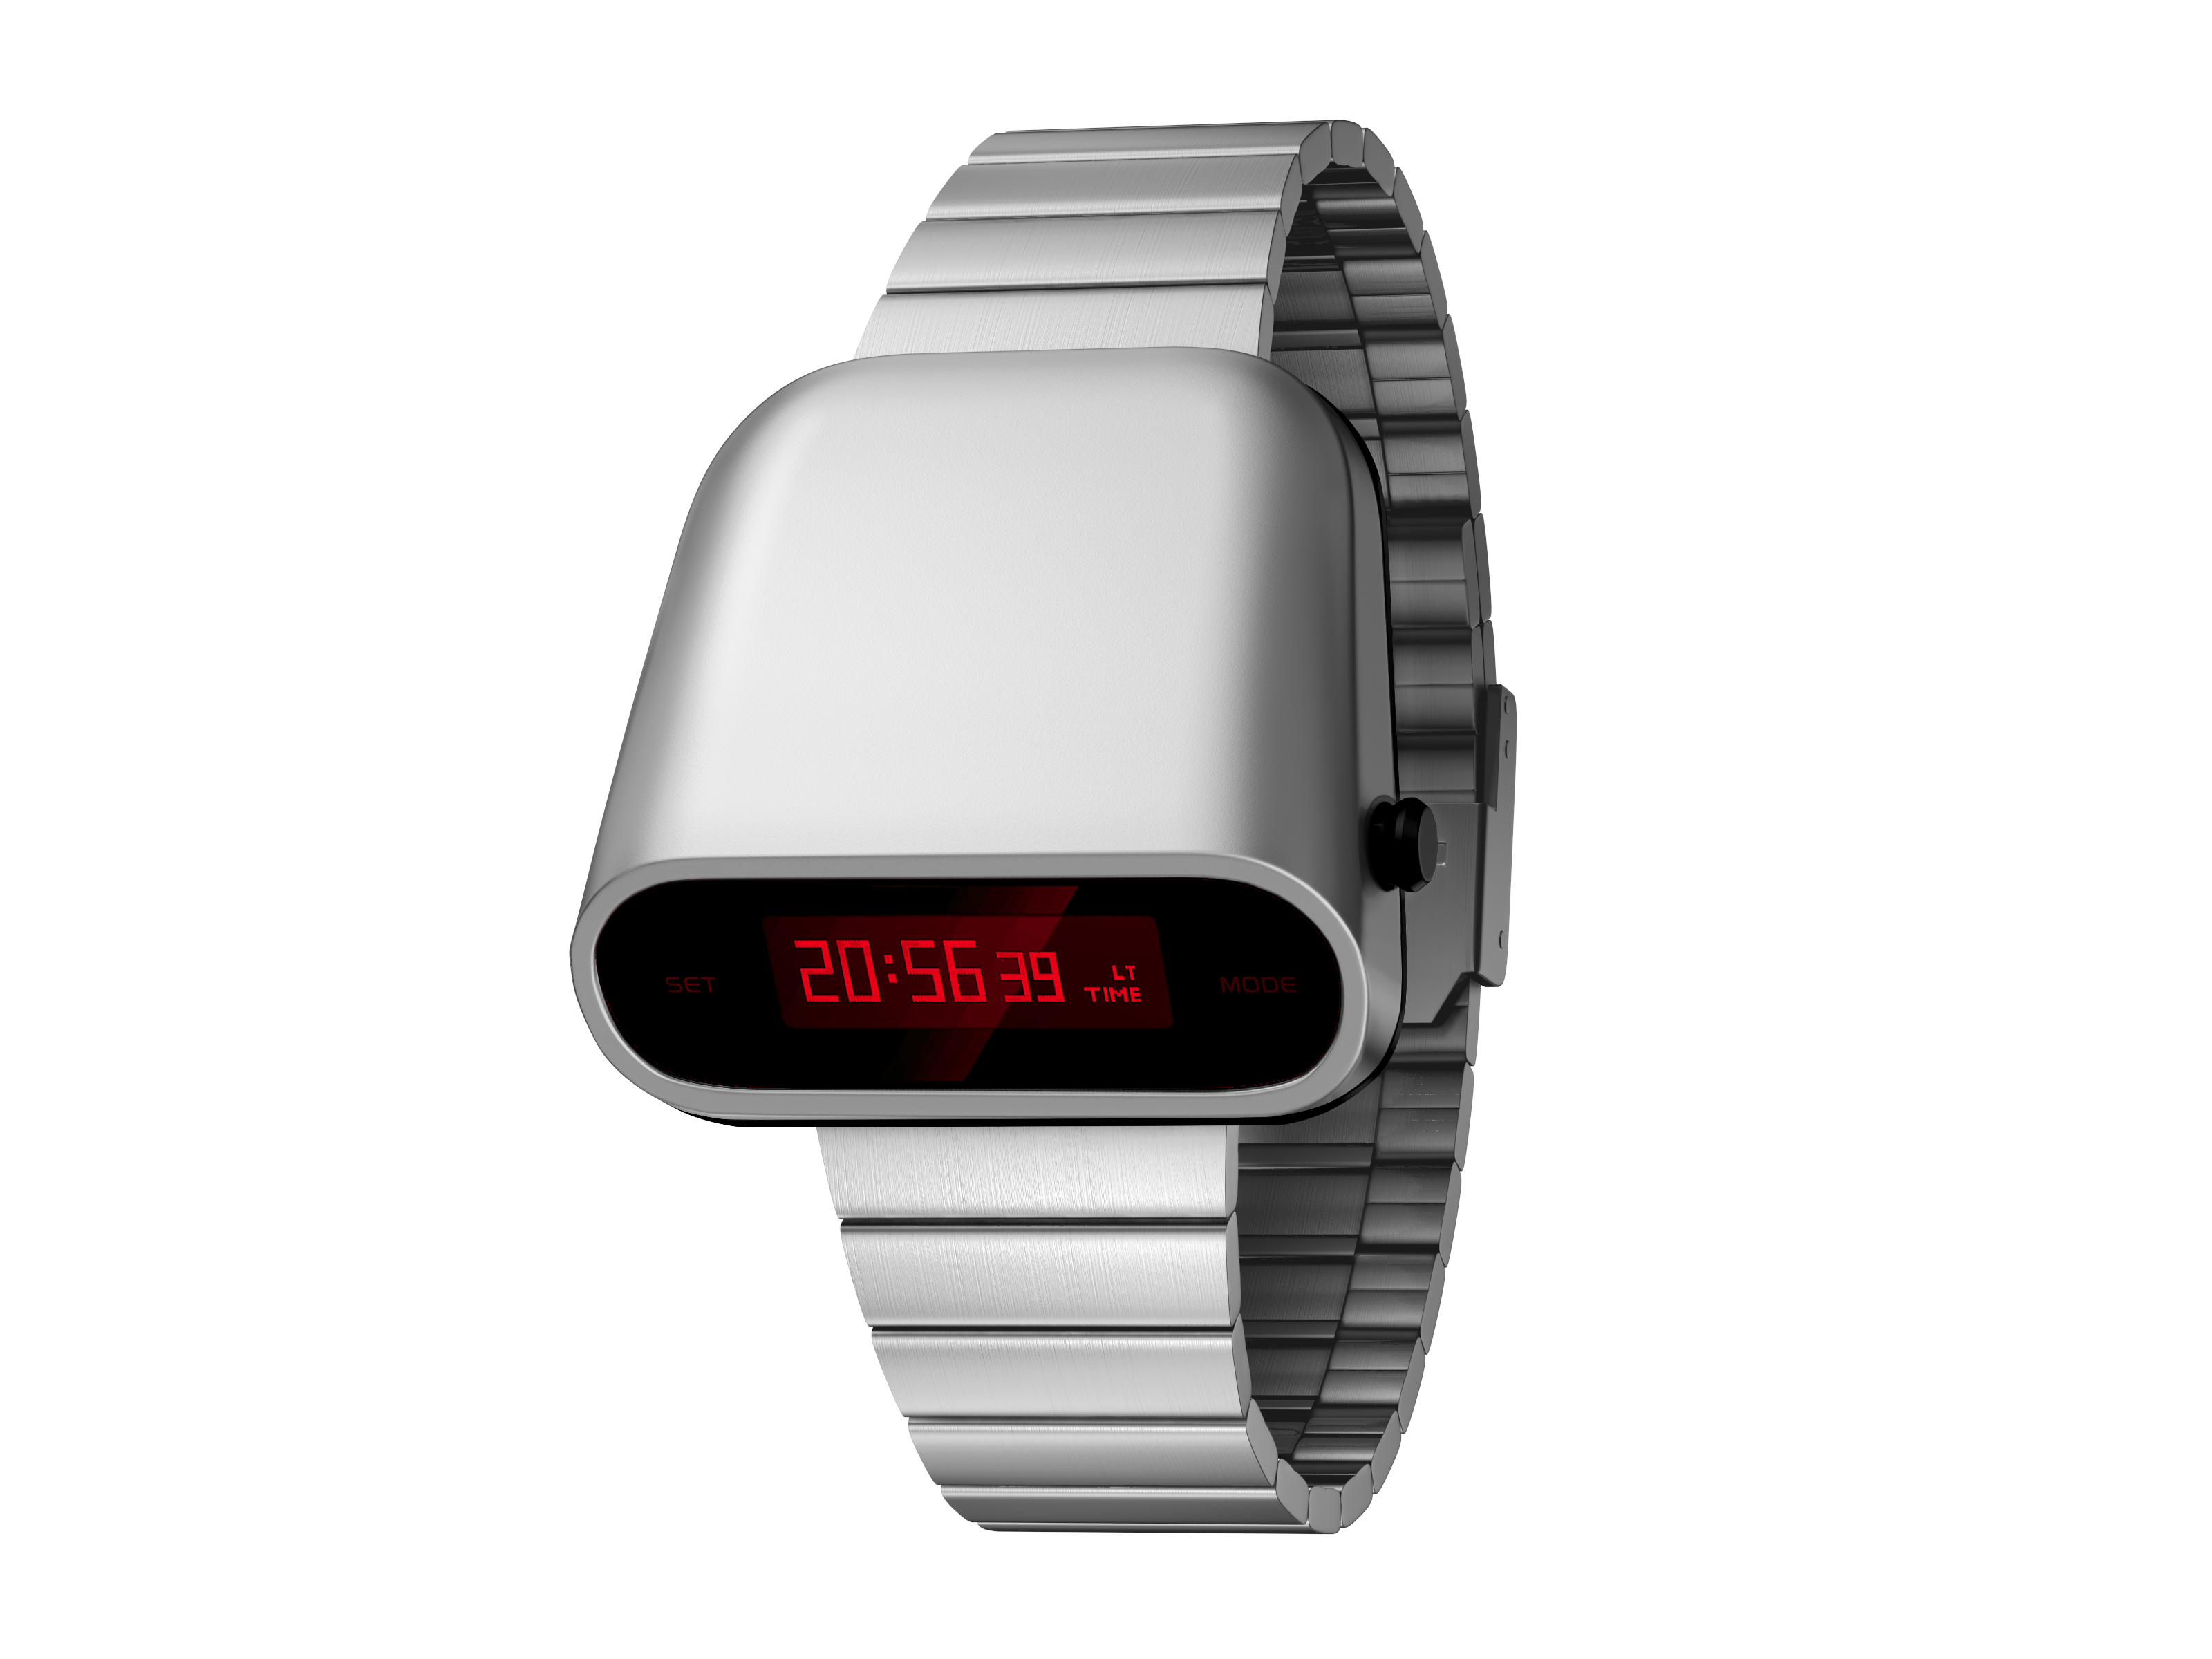 BENLYDESIGN Retro-Futuristic Metal Unique Digital Watch S1000S-R ...